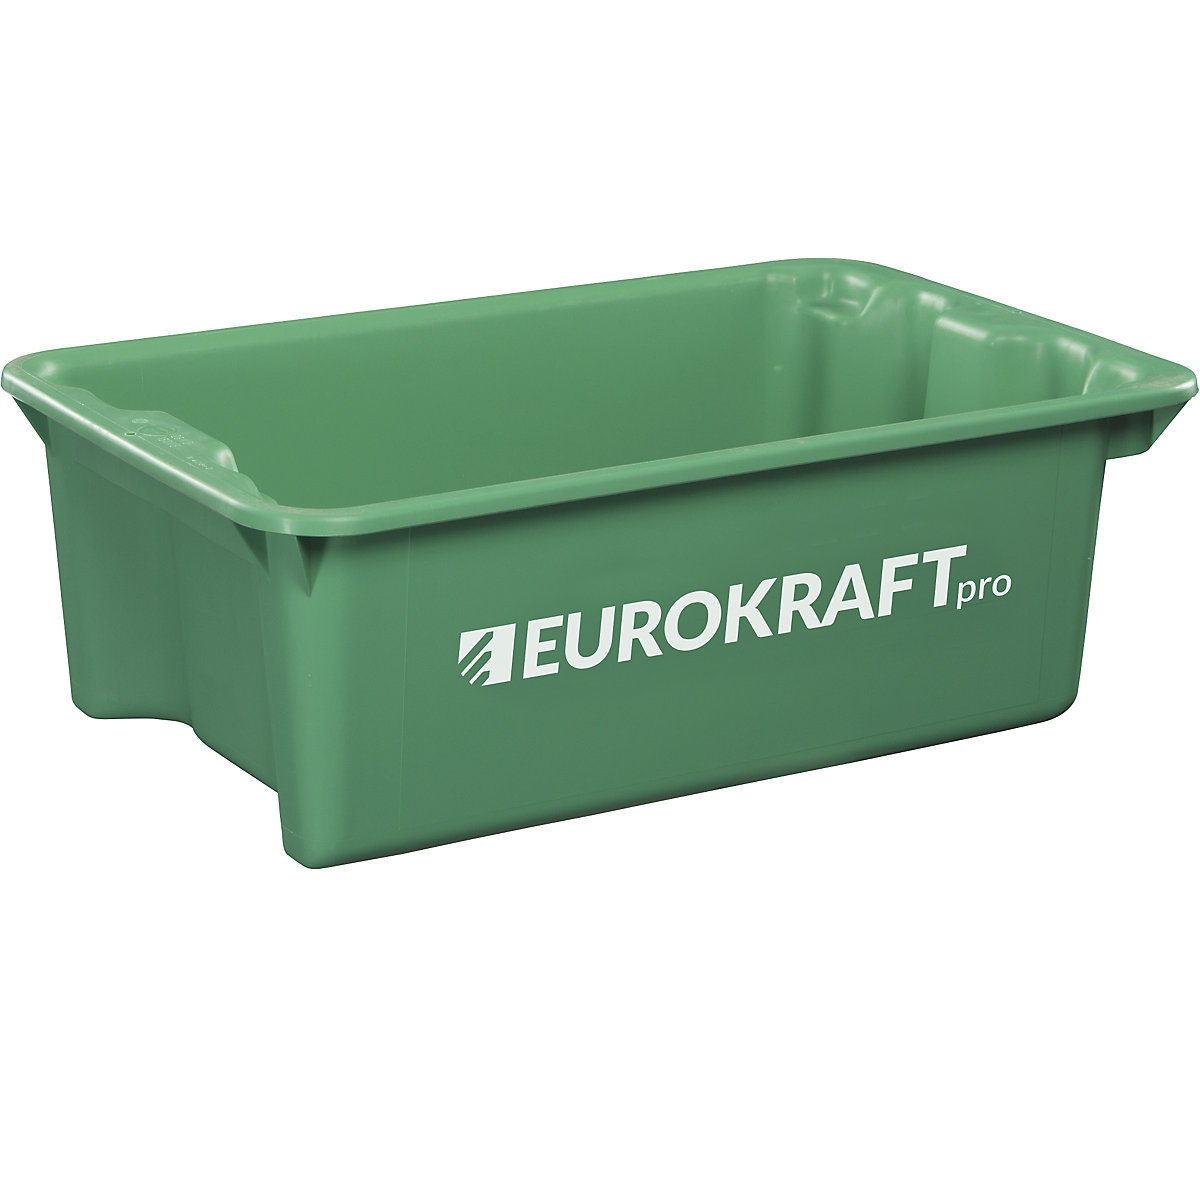 EUROKRAFTpro – Otočná stohovacia nádoba z polypropylénu vhodného pre potraviny, objem 34 litrov, OJ 3 ks, steny a dno uzatvorené, zelená